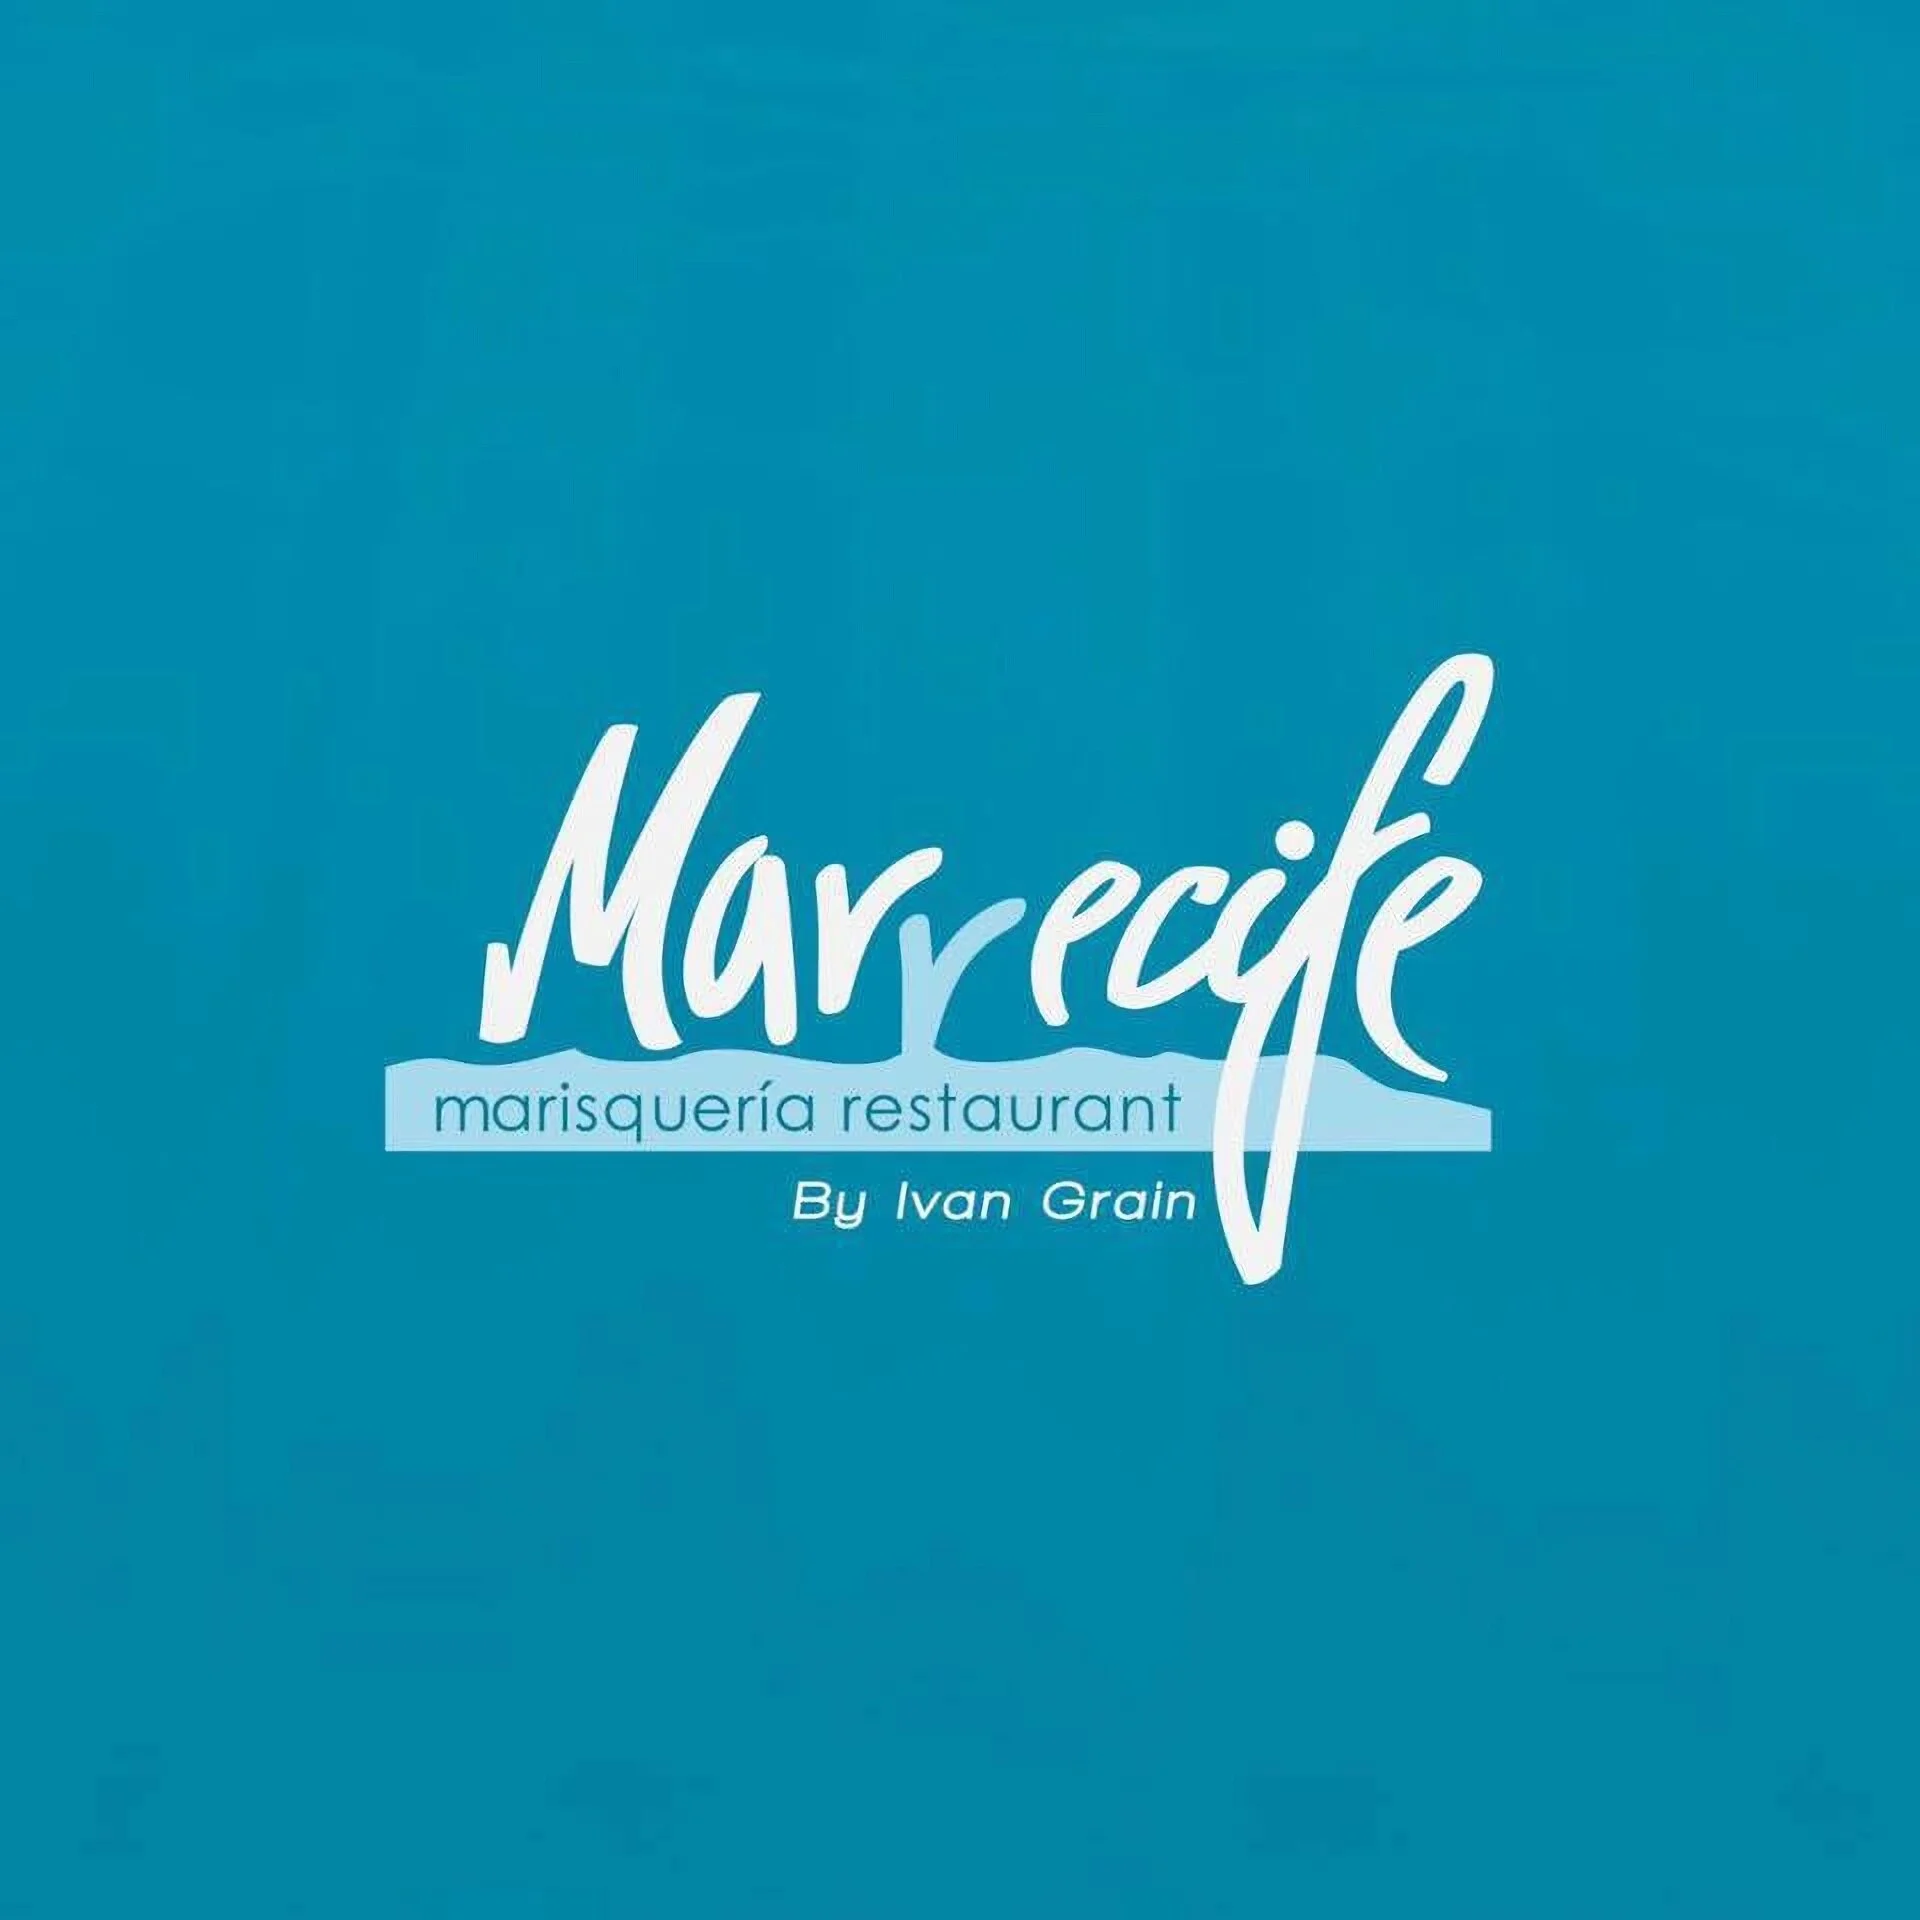 Marrecife-4010